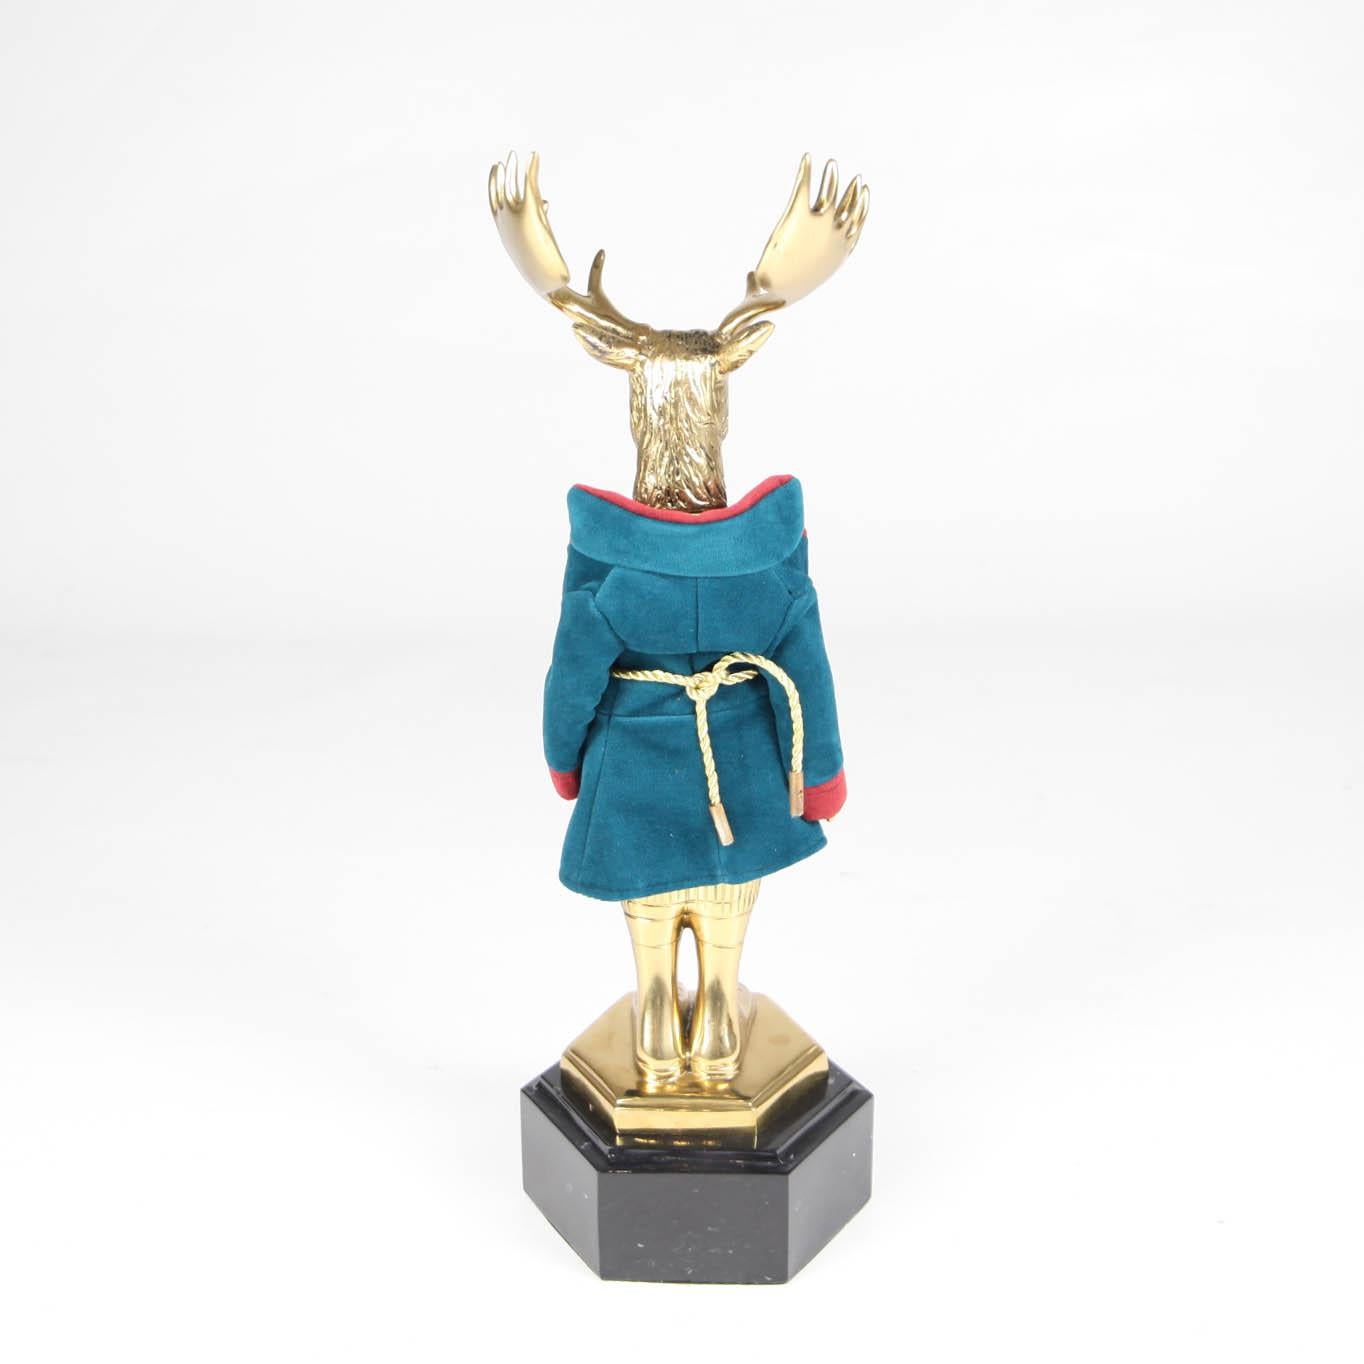 Einzigartige Deer-Messing-Skulptur mit handgefertigtem Outfit und schönem Marmorsockel. Hohe handwerkliche Qualität, ausgezeichneter Zustand. 
Entsprechende 